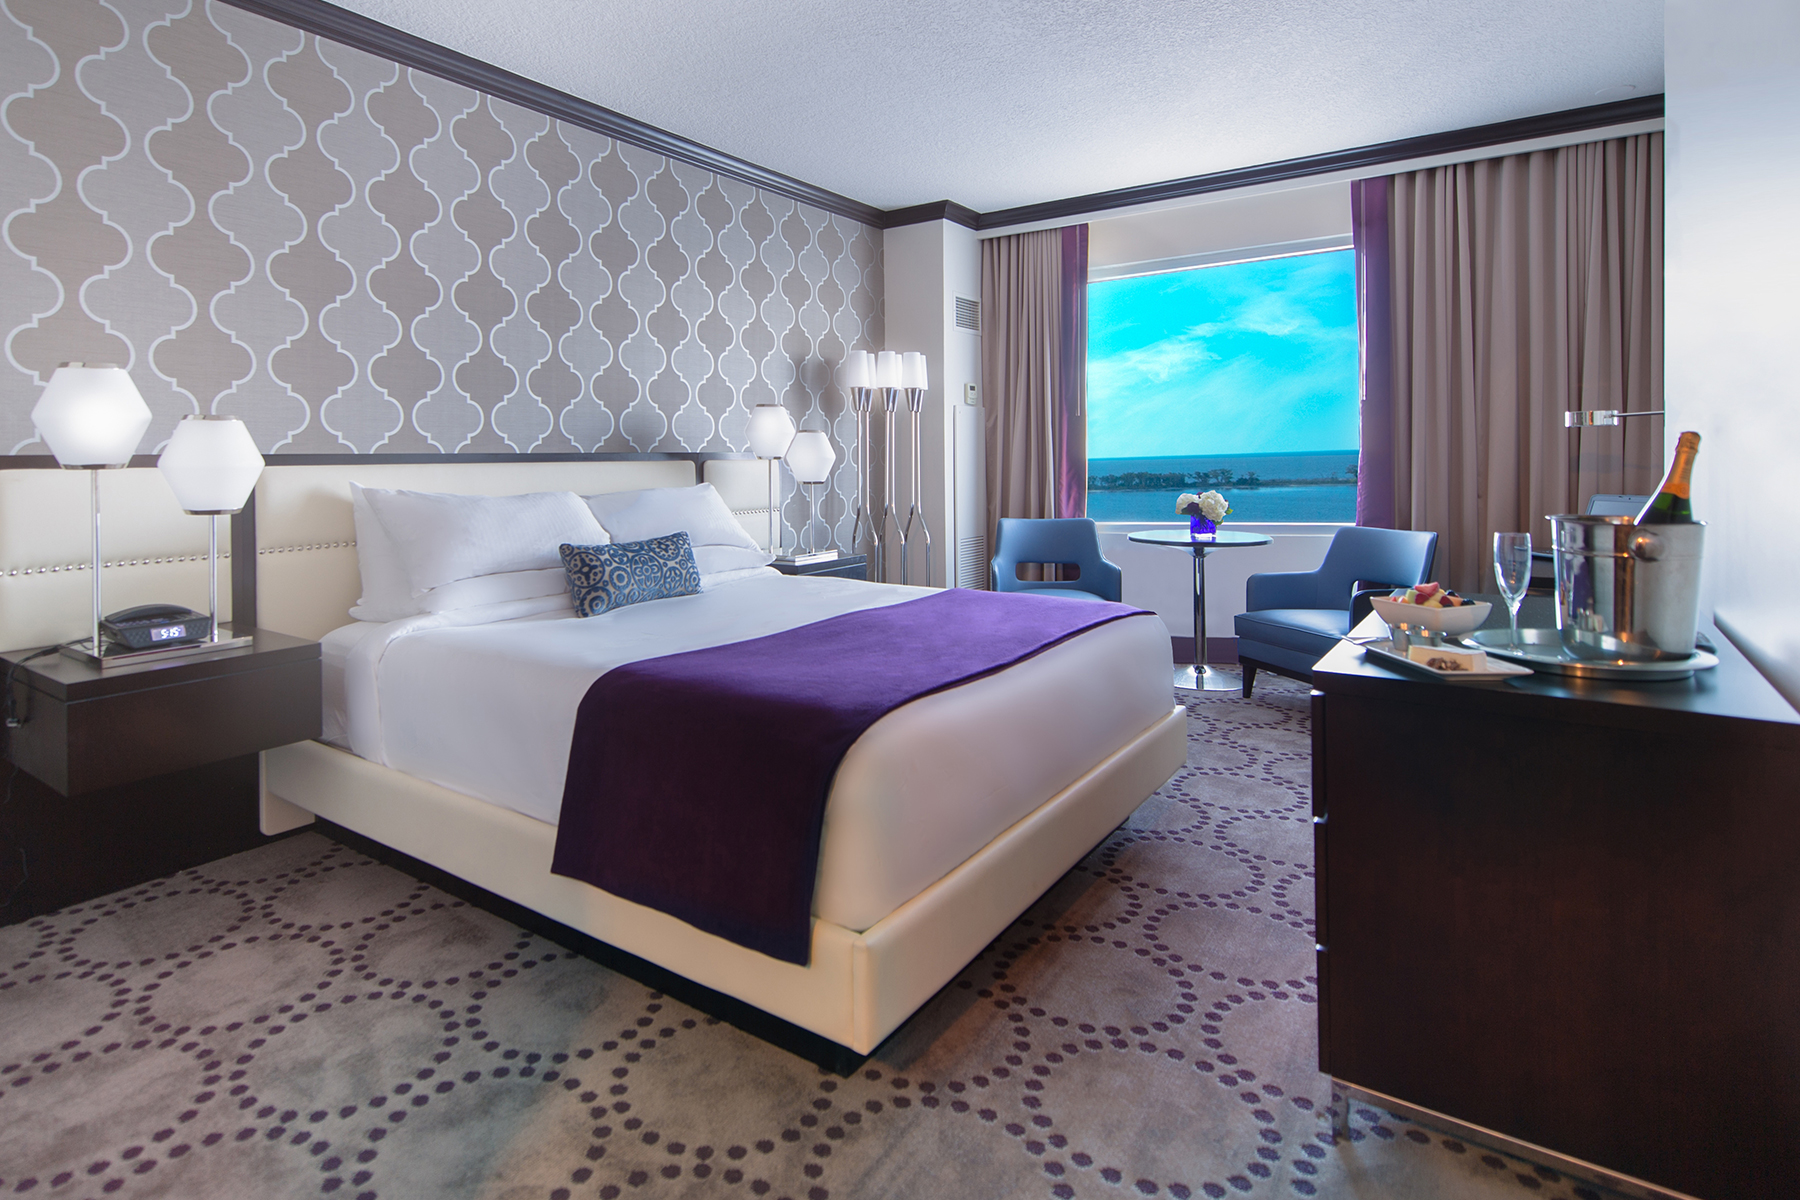 Caesars Rewards  Wyndham Hotels & Resorts